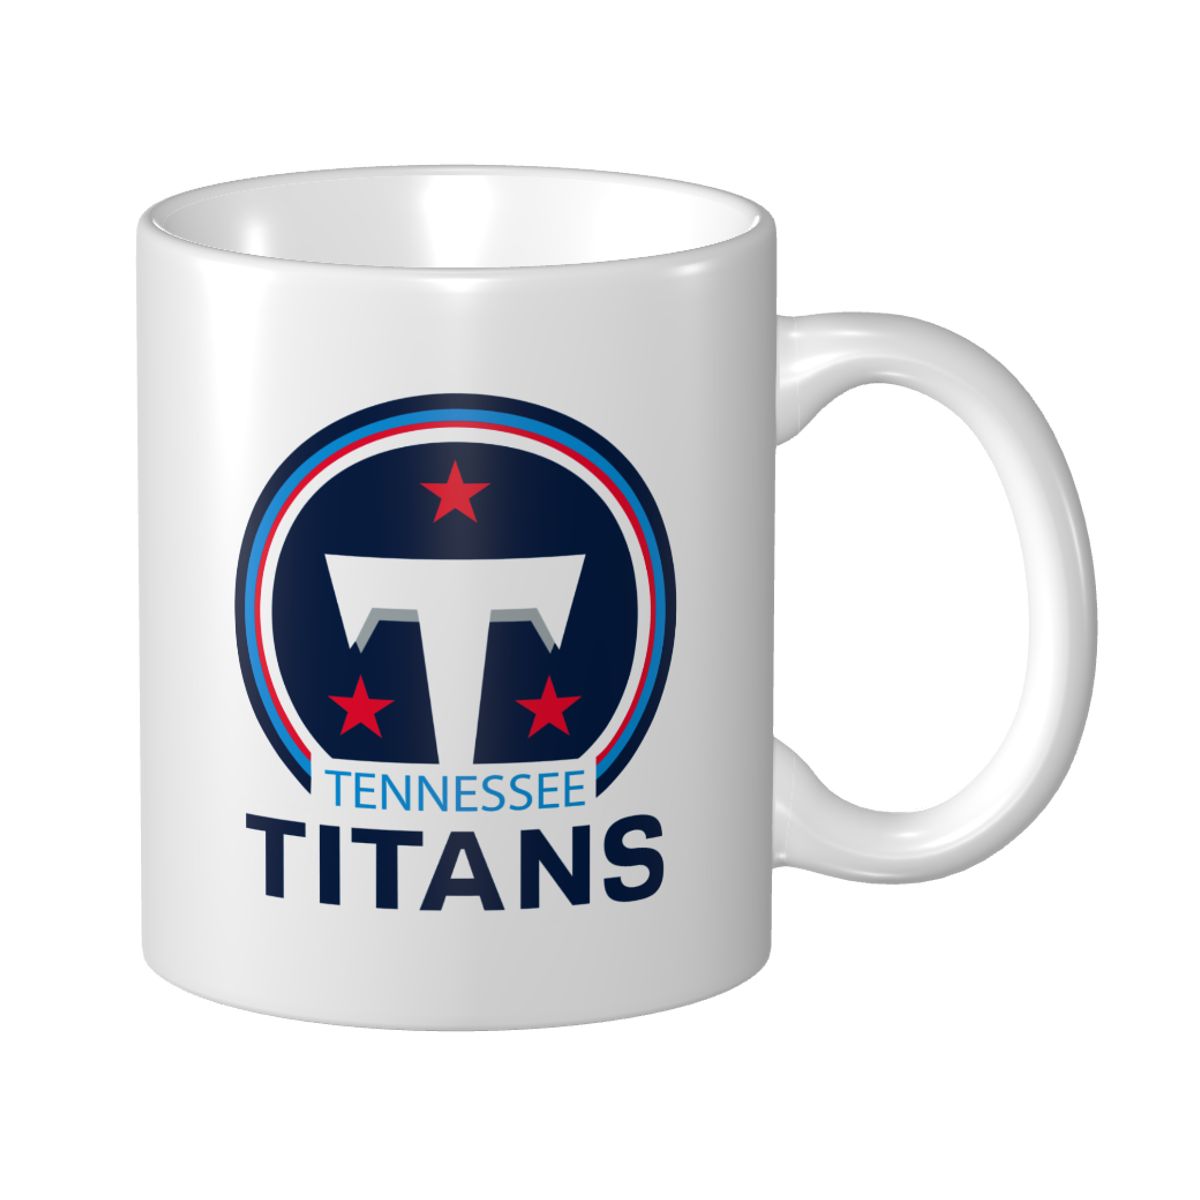 Tennessee Titans Mug